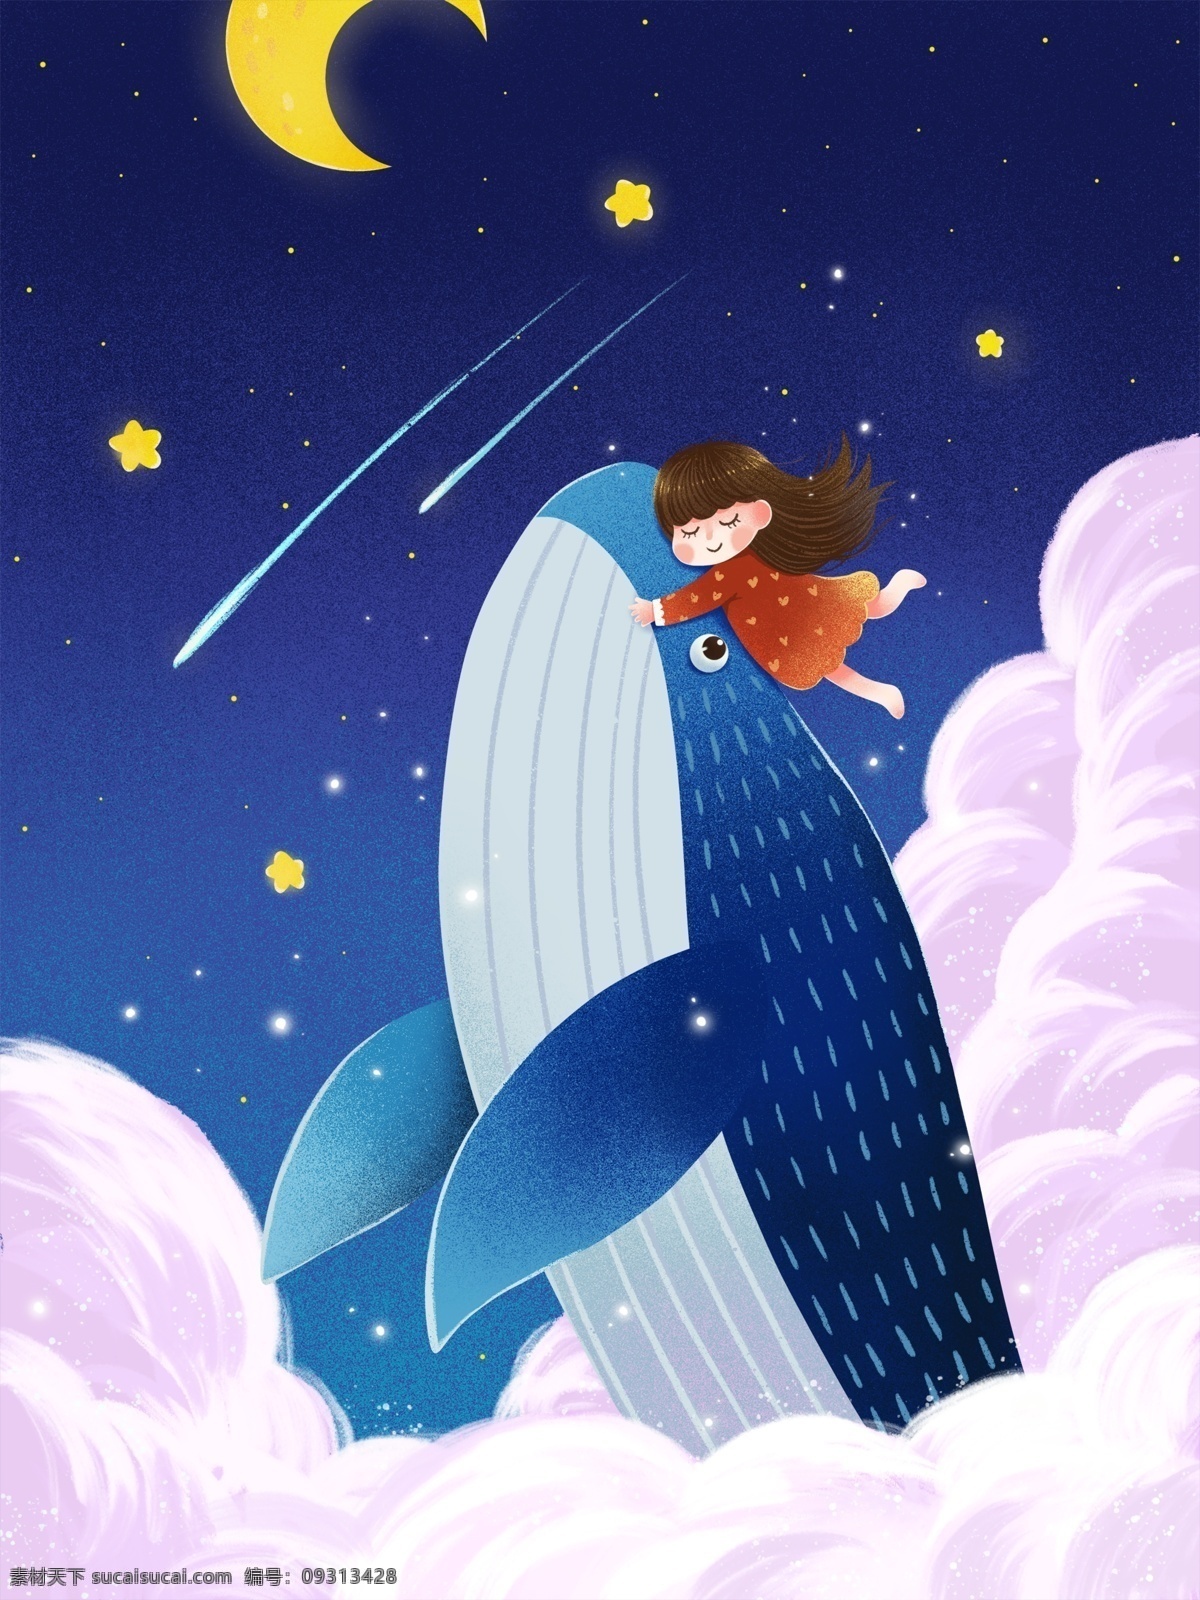 治愈 系 鲸鱼 女孩 唯美 噪 点 插画 星空 月亮 云 治愈系 鲸鱼与女孩 噪点插画 流星